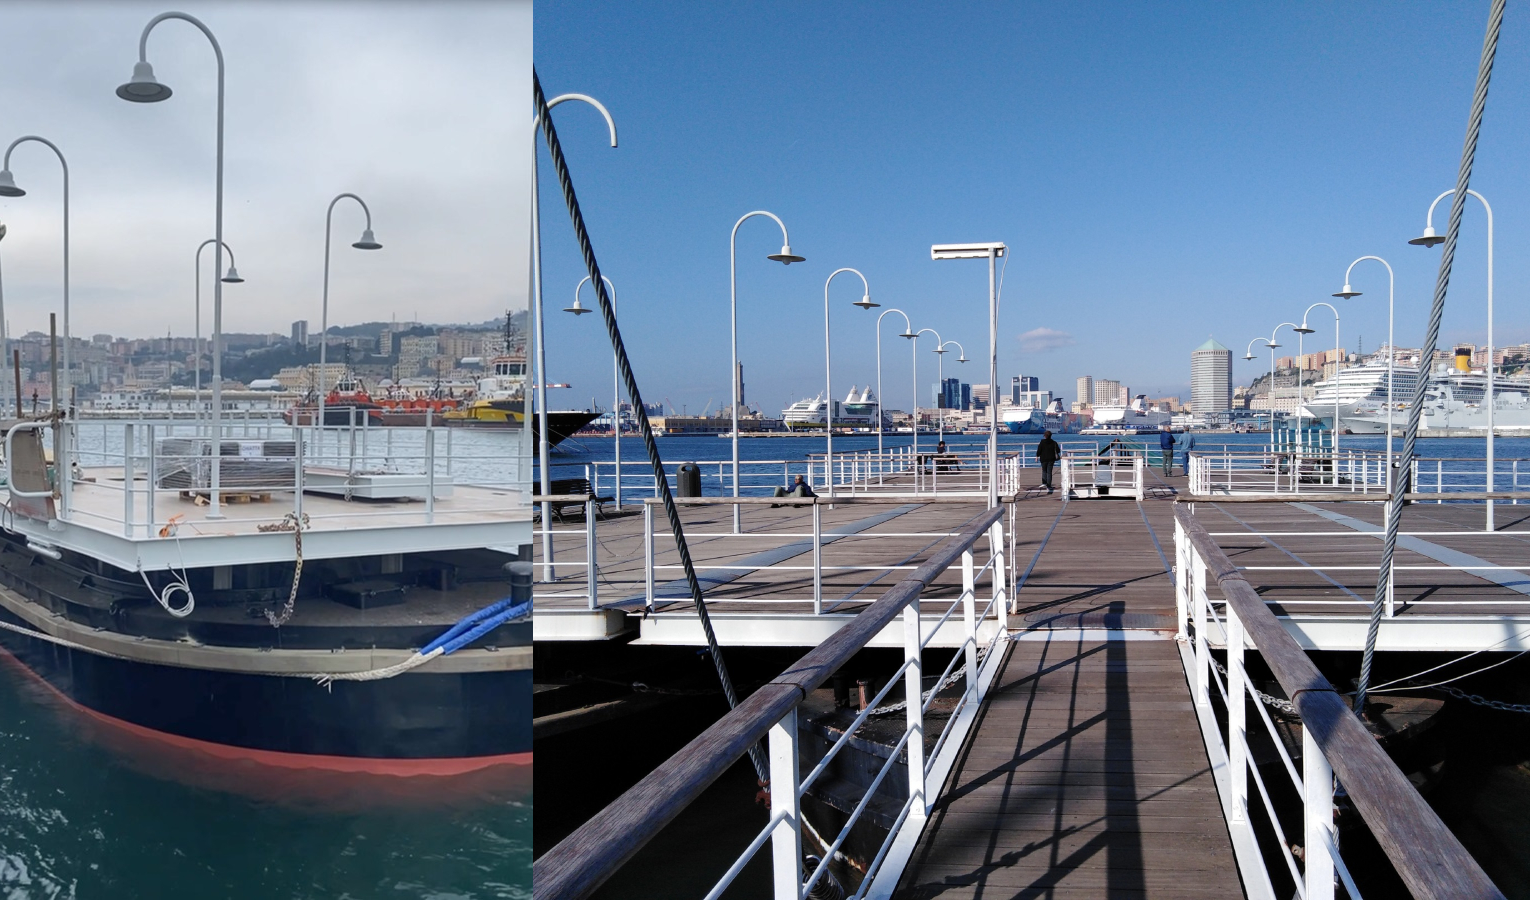 Genova, al Porto Antico ritorna l'Isola delle Chiatte dopo i lavori di restauro